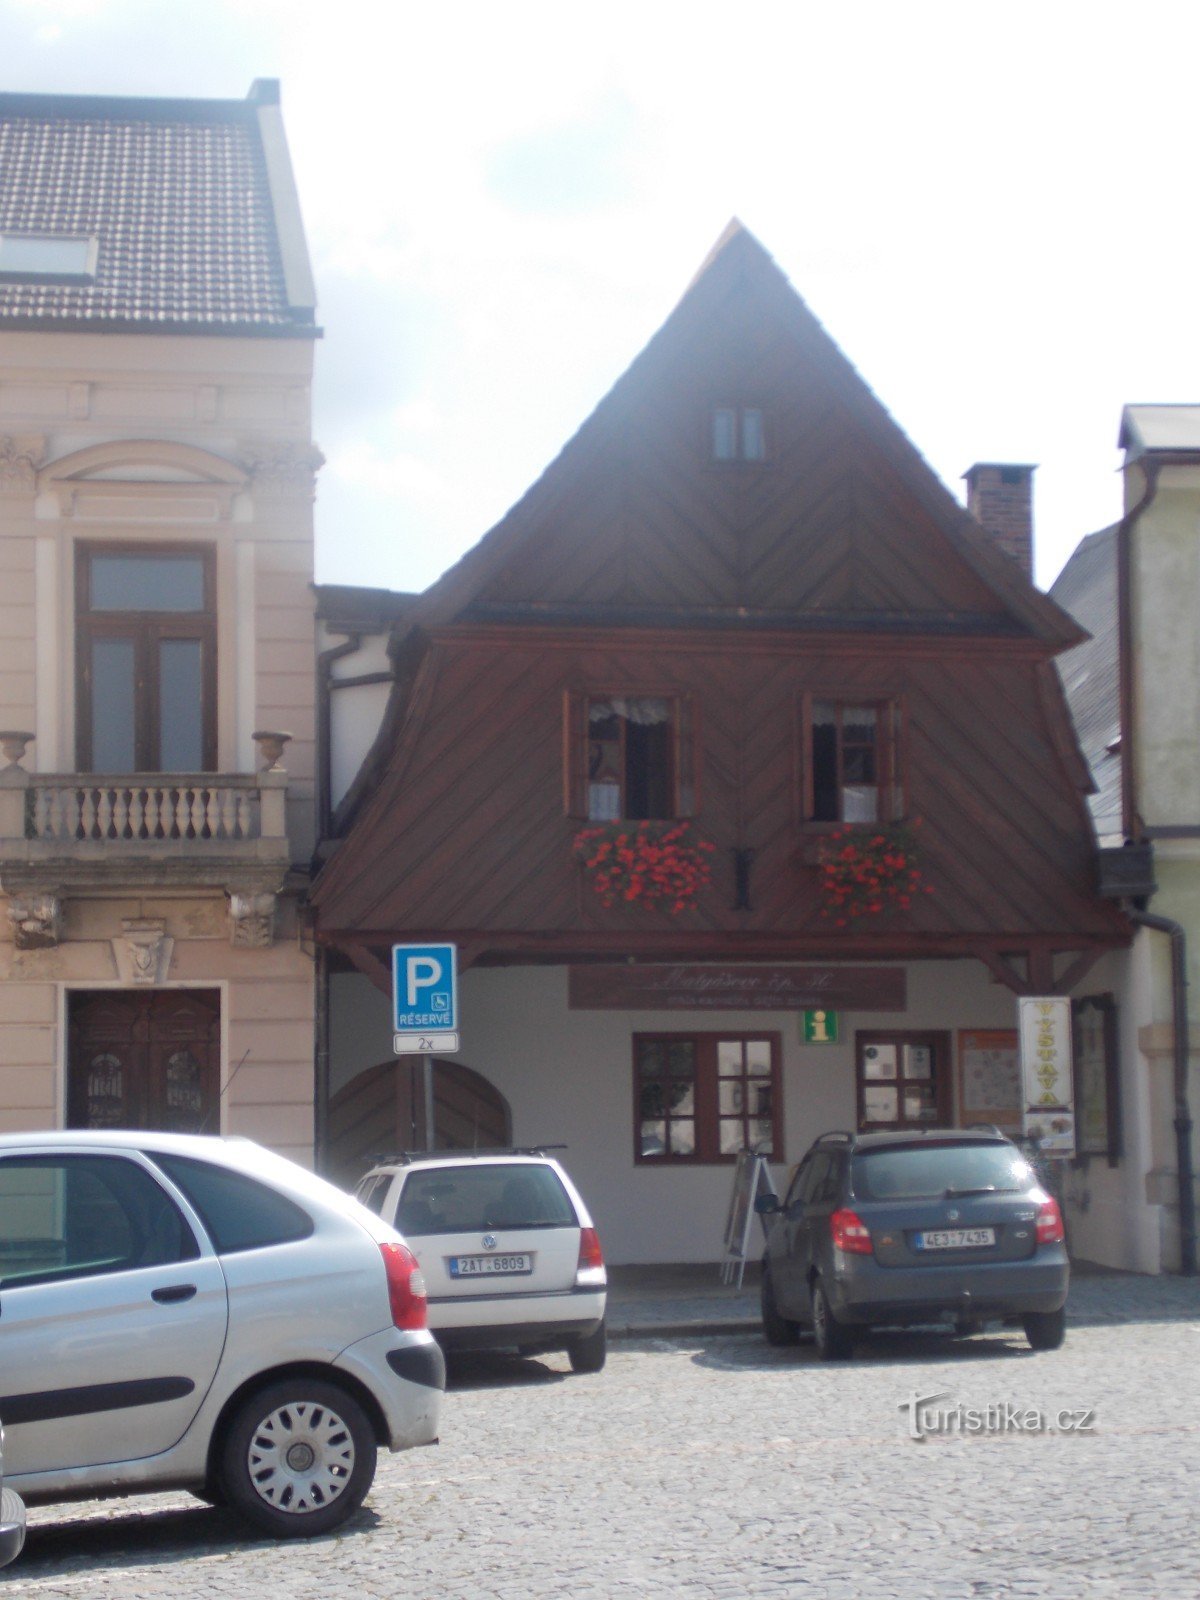 Centrum informacyjne w Jablonném nad Orlicí